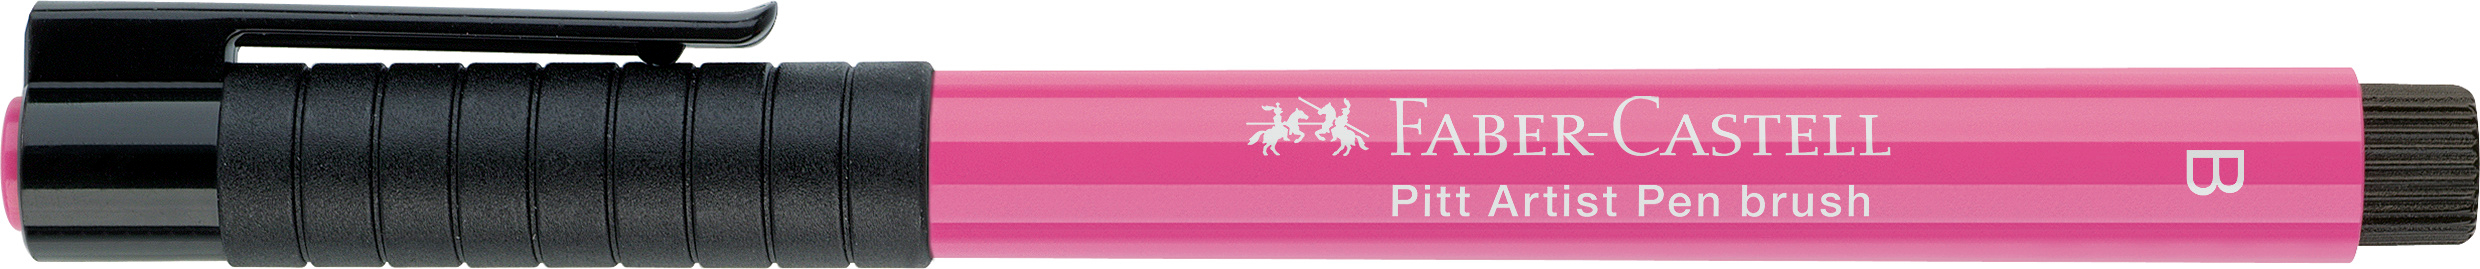 FABER-CASTELL Pitt Artist Pen Brush 2.5mm 167429 pink madder lake